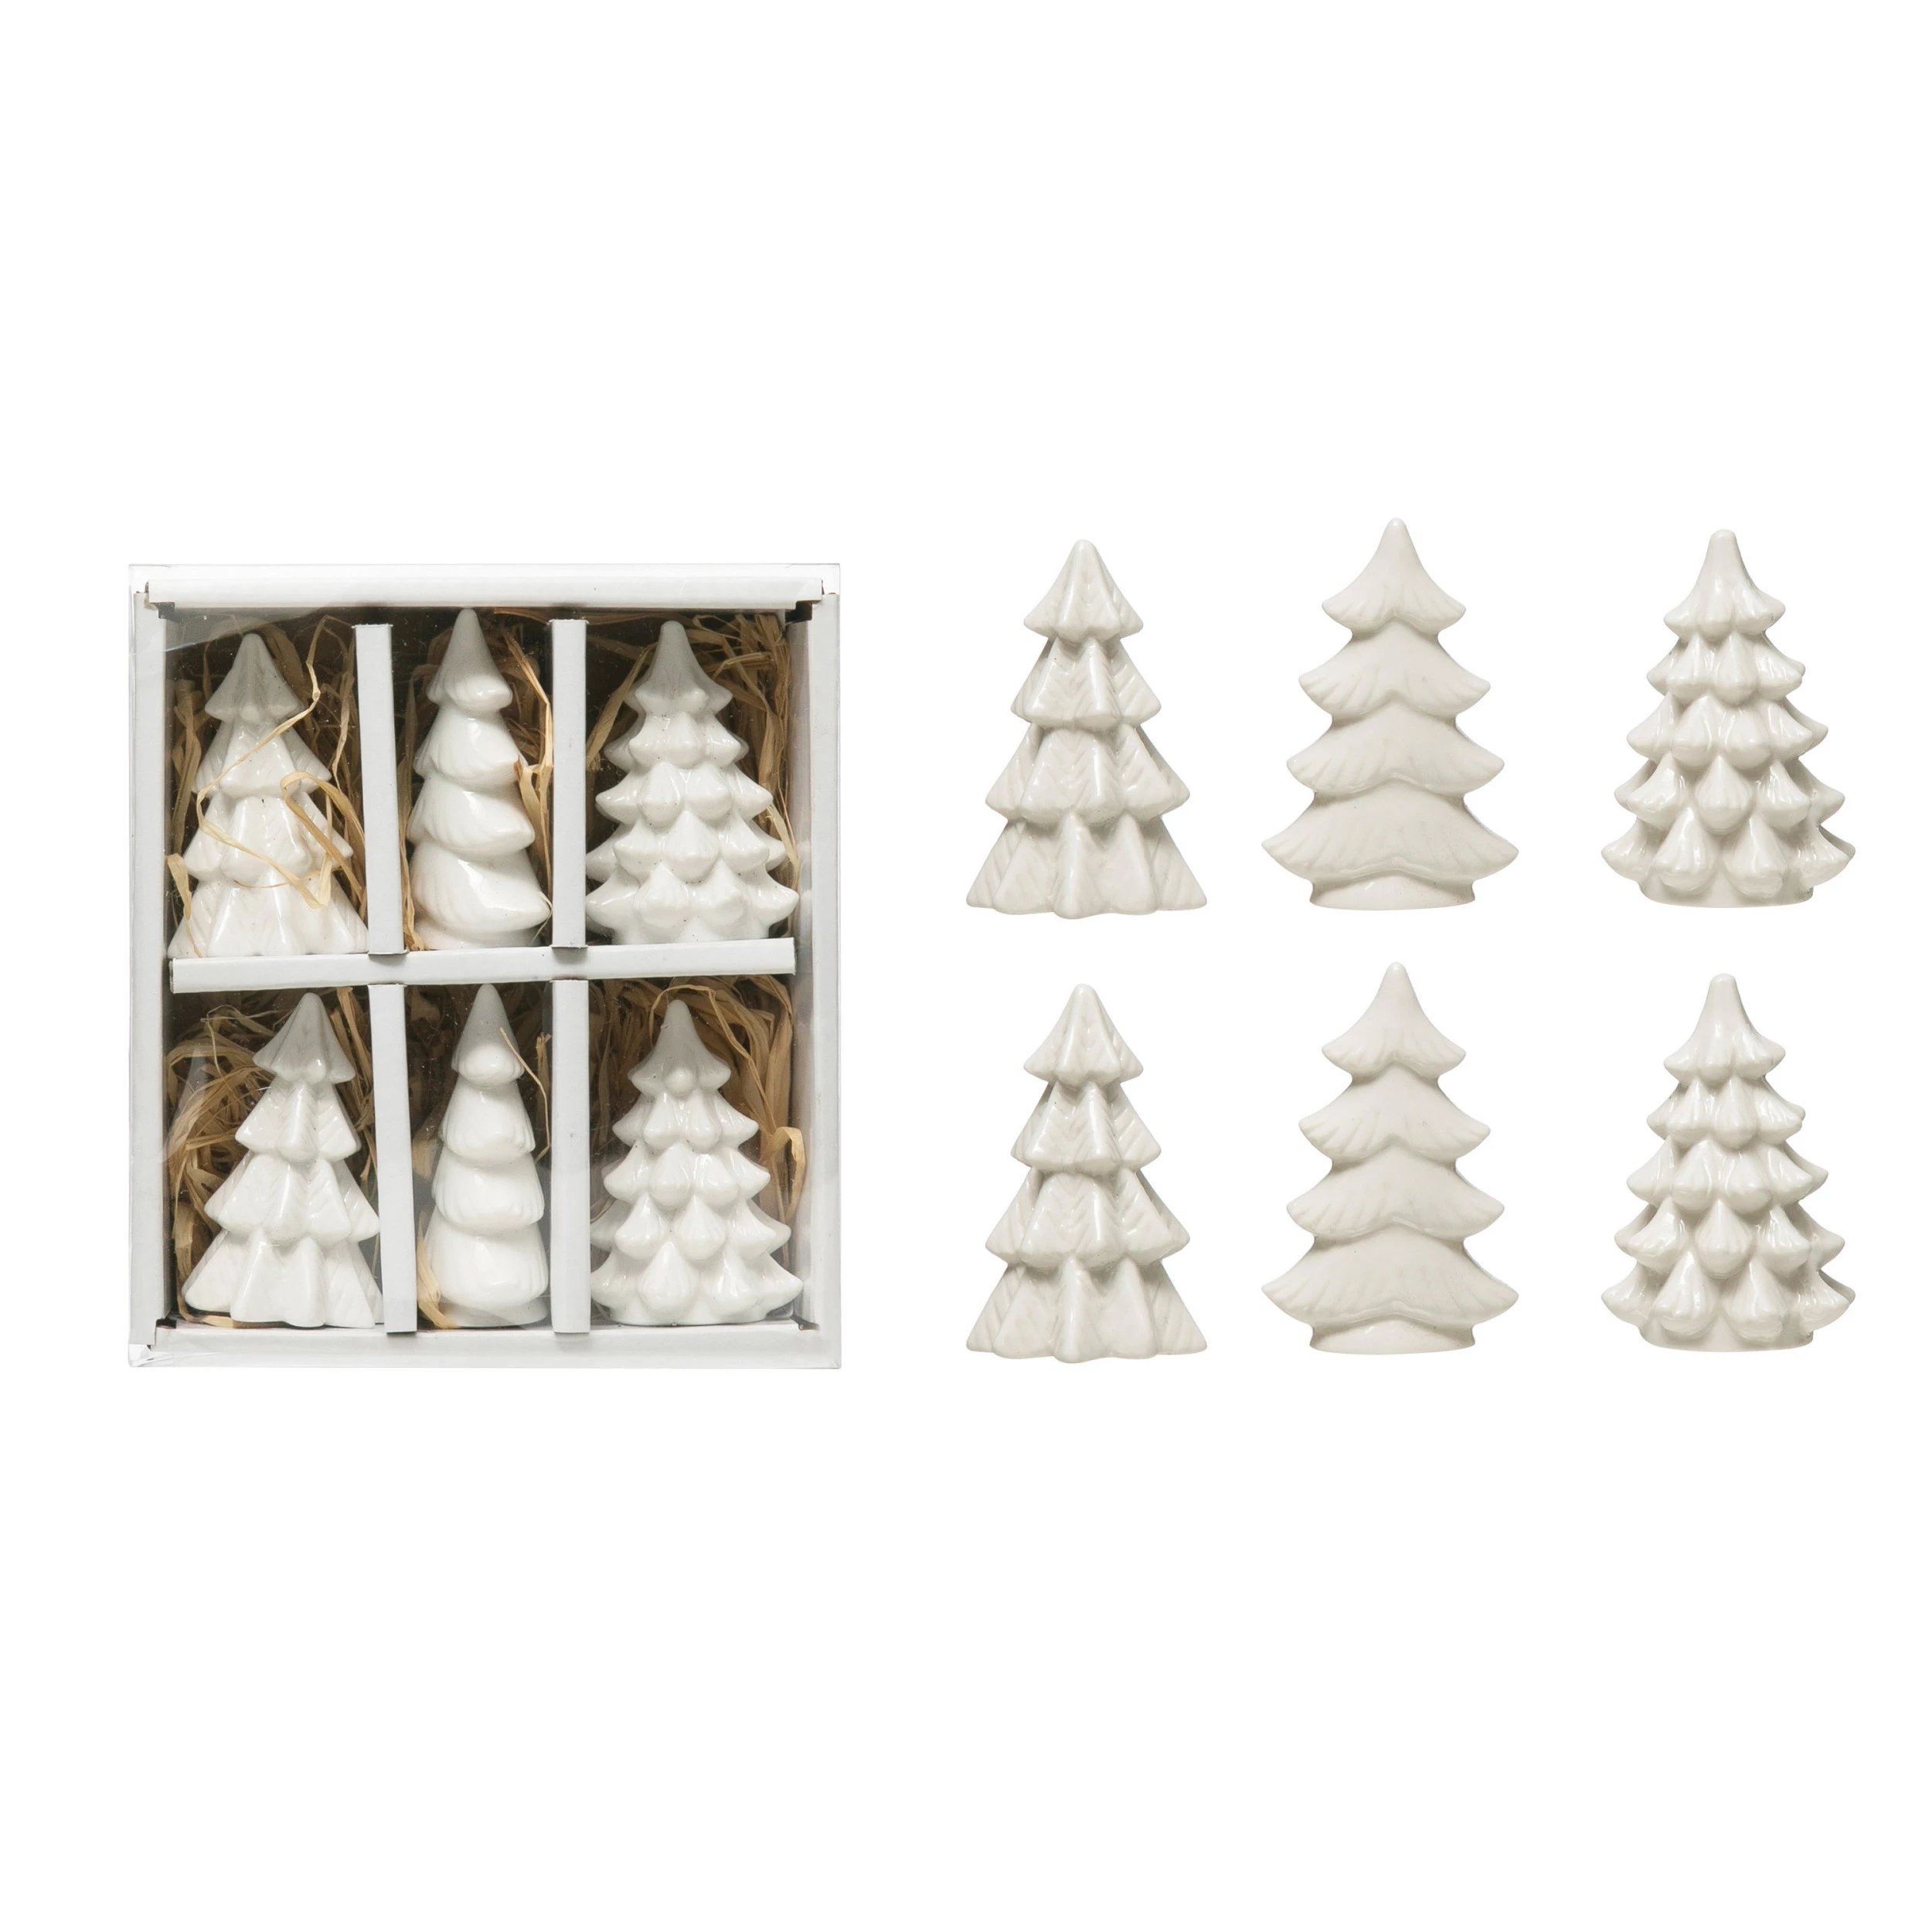 2.5" Stoneware Trees (Boxed Set of 6) - Image 2